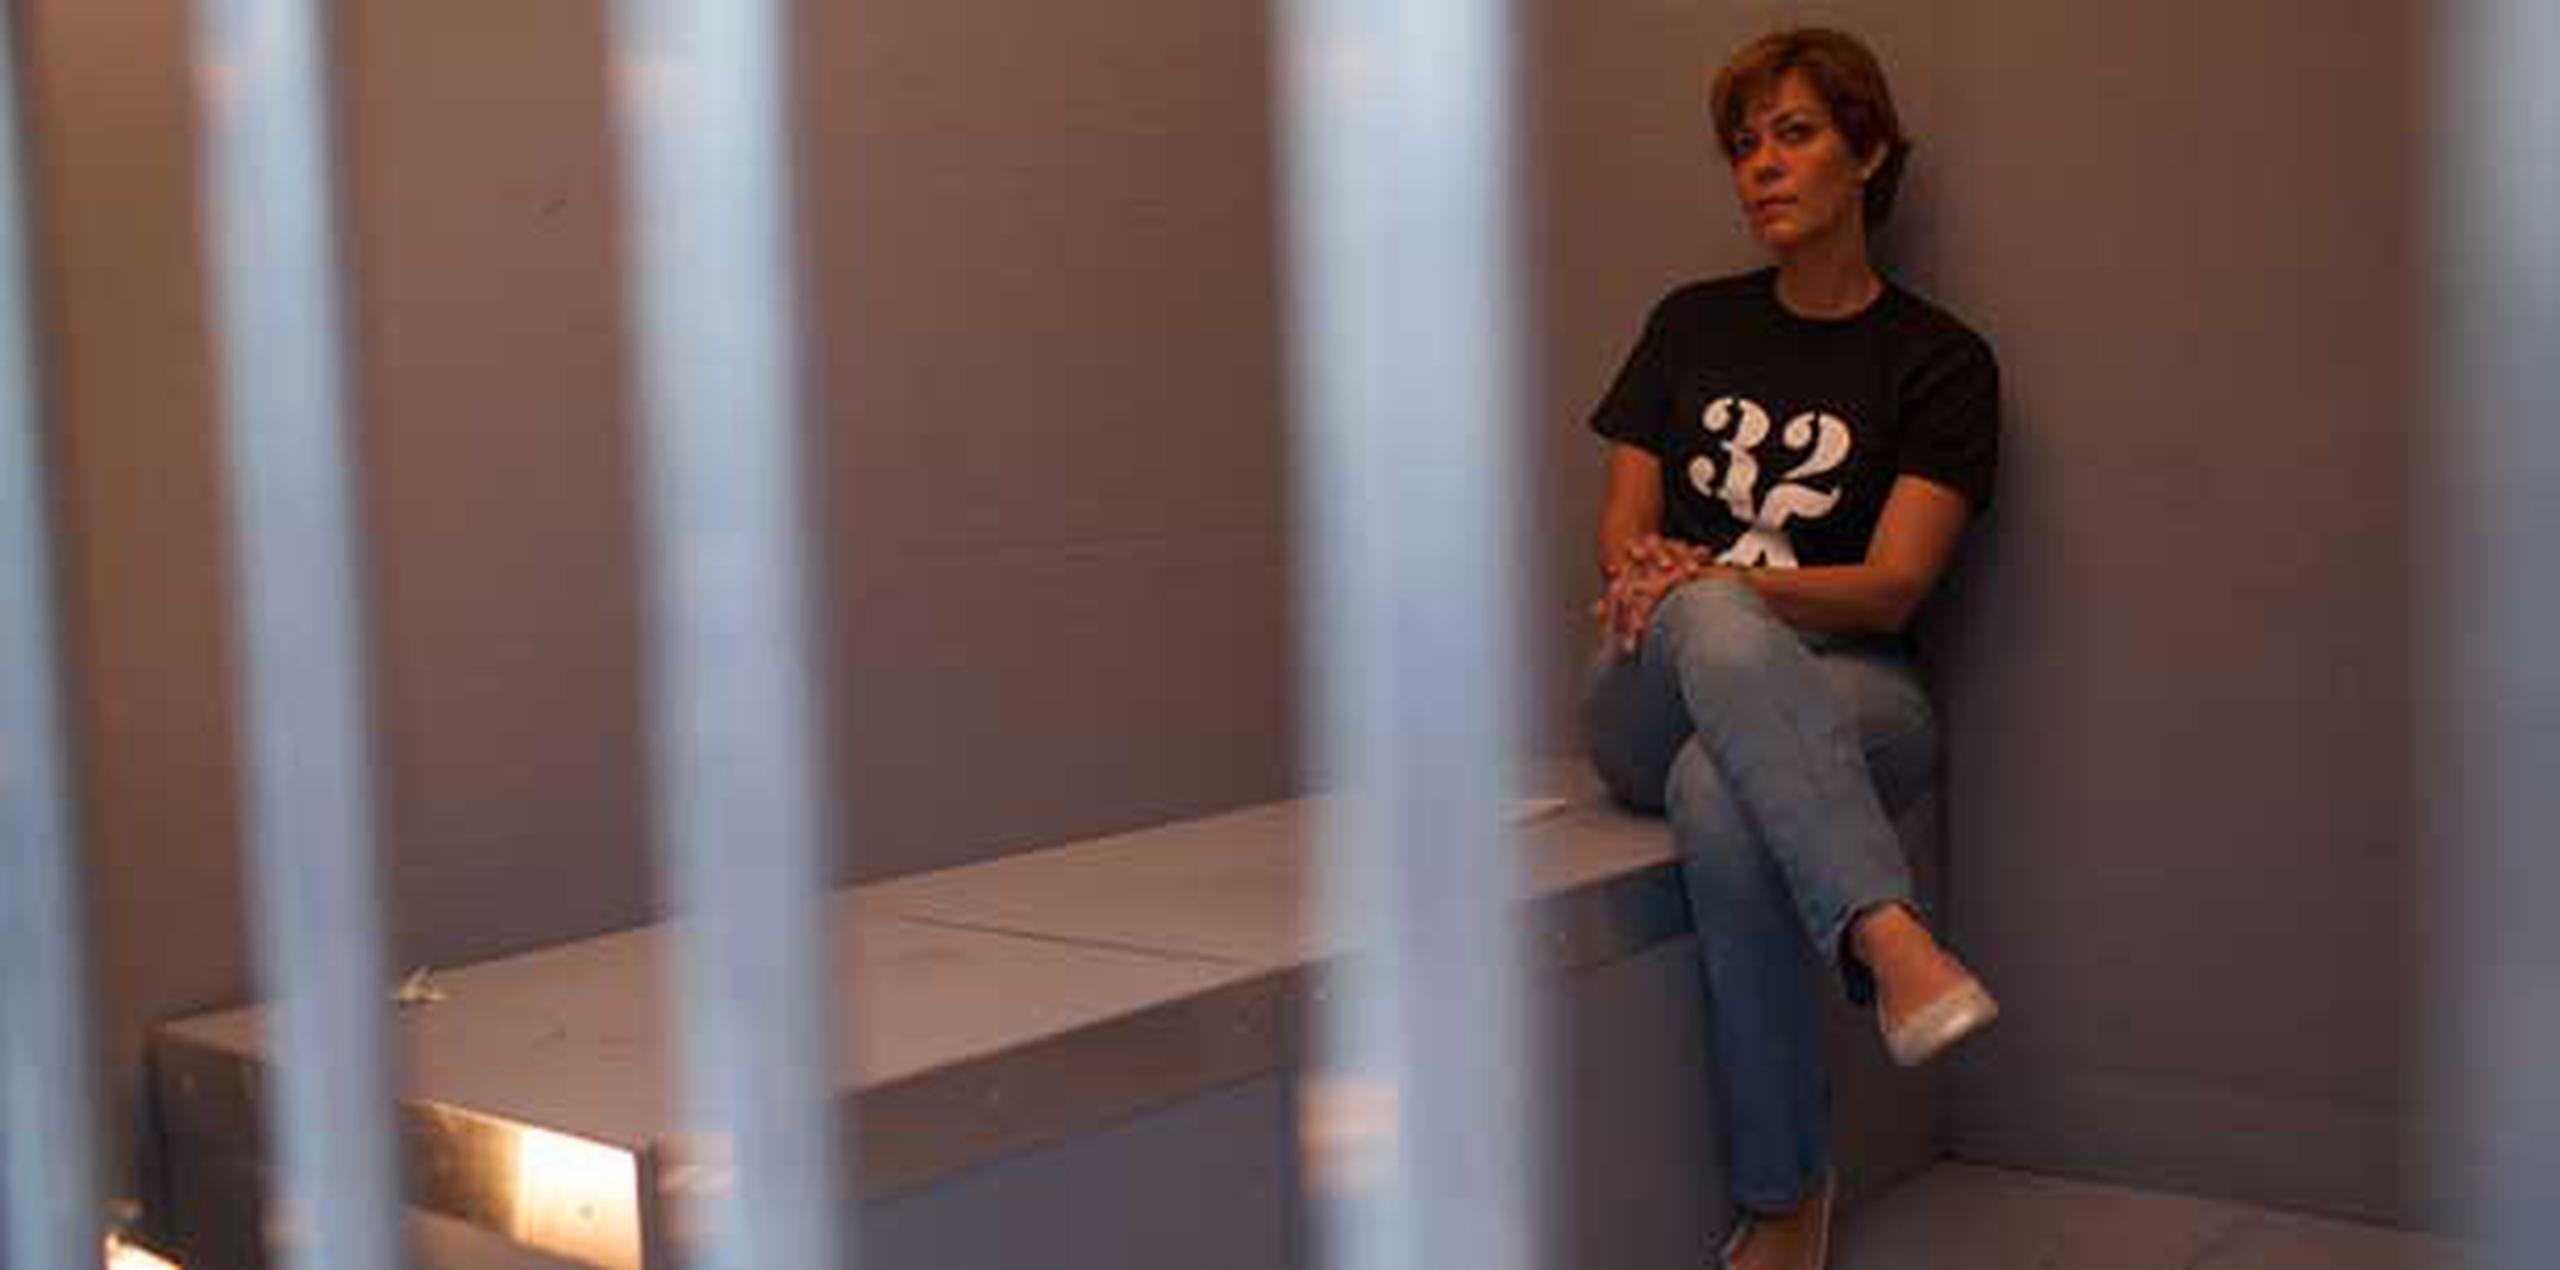 Durante la mañana de hoy también se "encarcelarán" otras personalidades, como la senadora María de Lourdes Santiago. (dennis.rivera@gfrmedia.com)